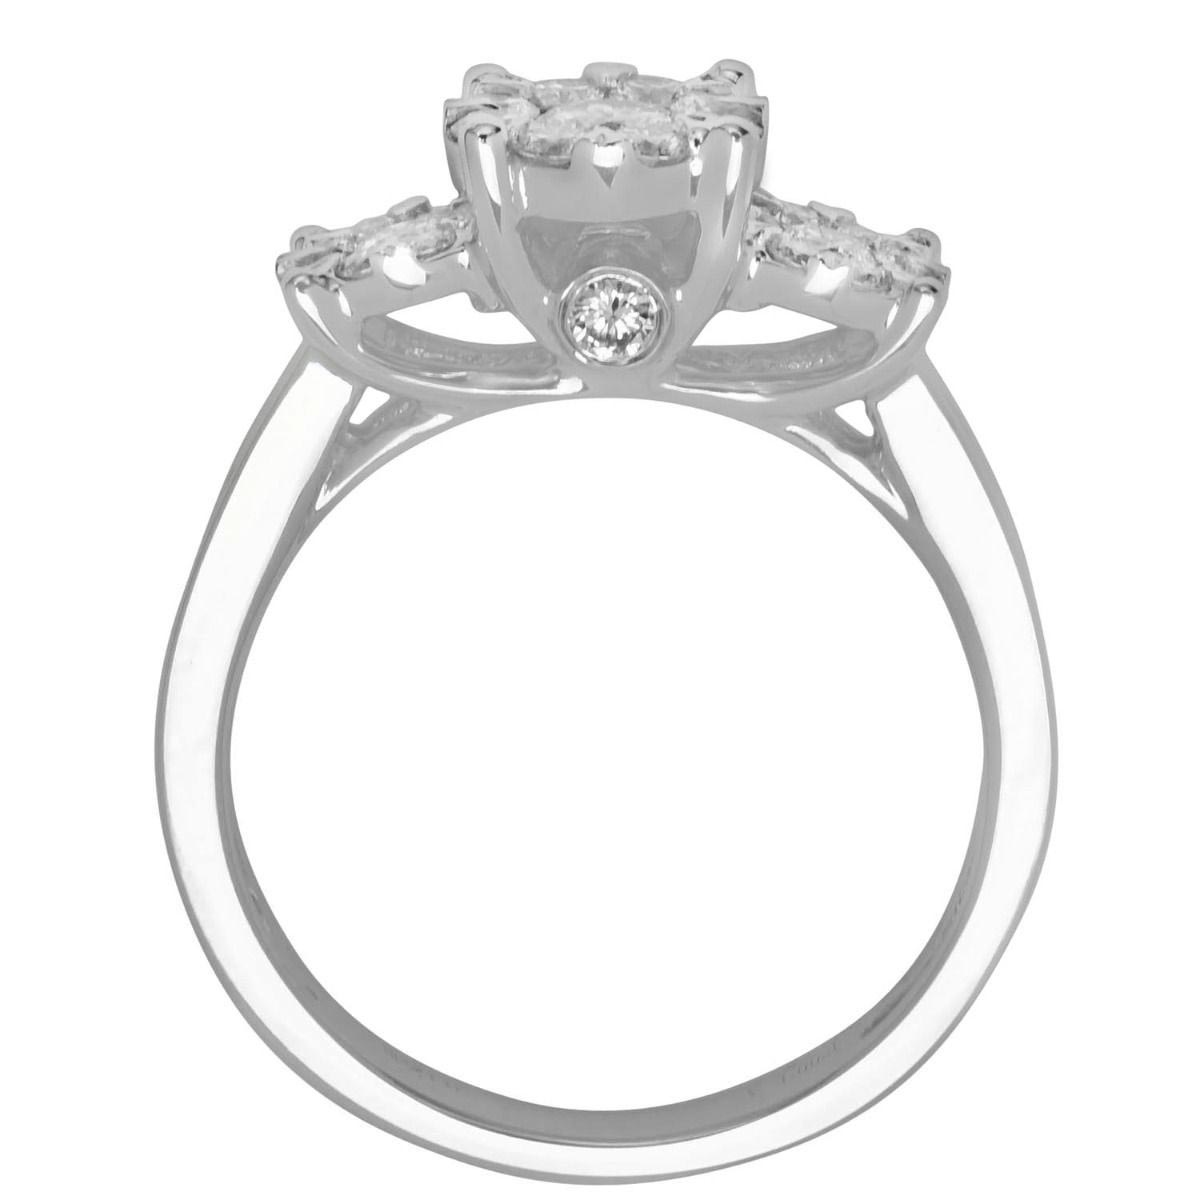 Lovebright Diamond Engagement Ring in 14kt White Gold (1cttw)